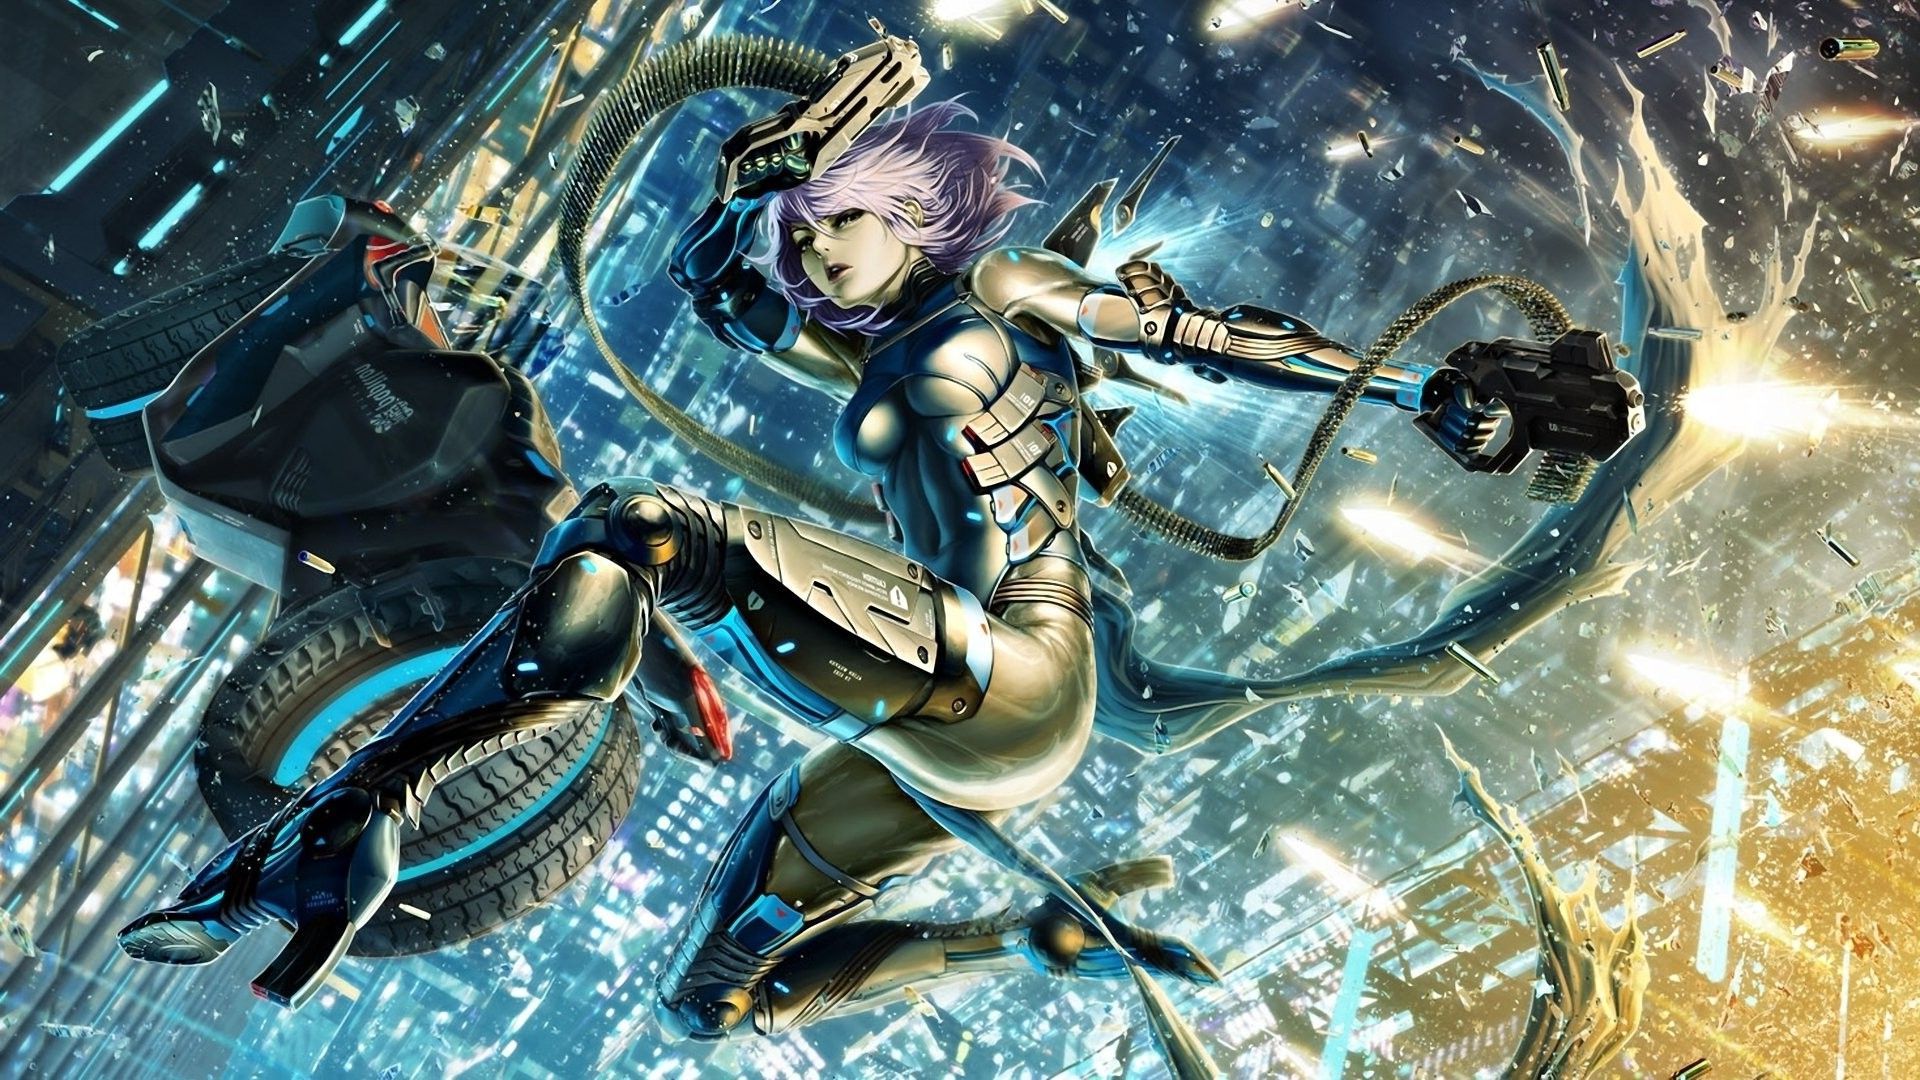 artwork, Fantasy Art, Anime, Cyborg, Futuristic, City, Original